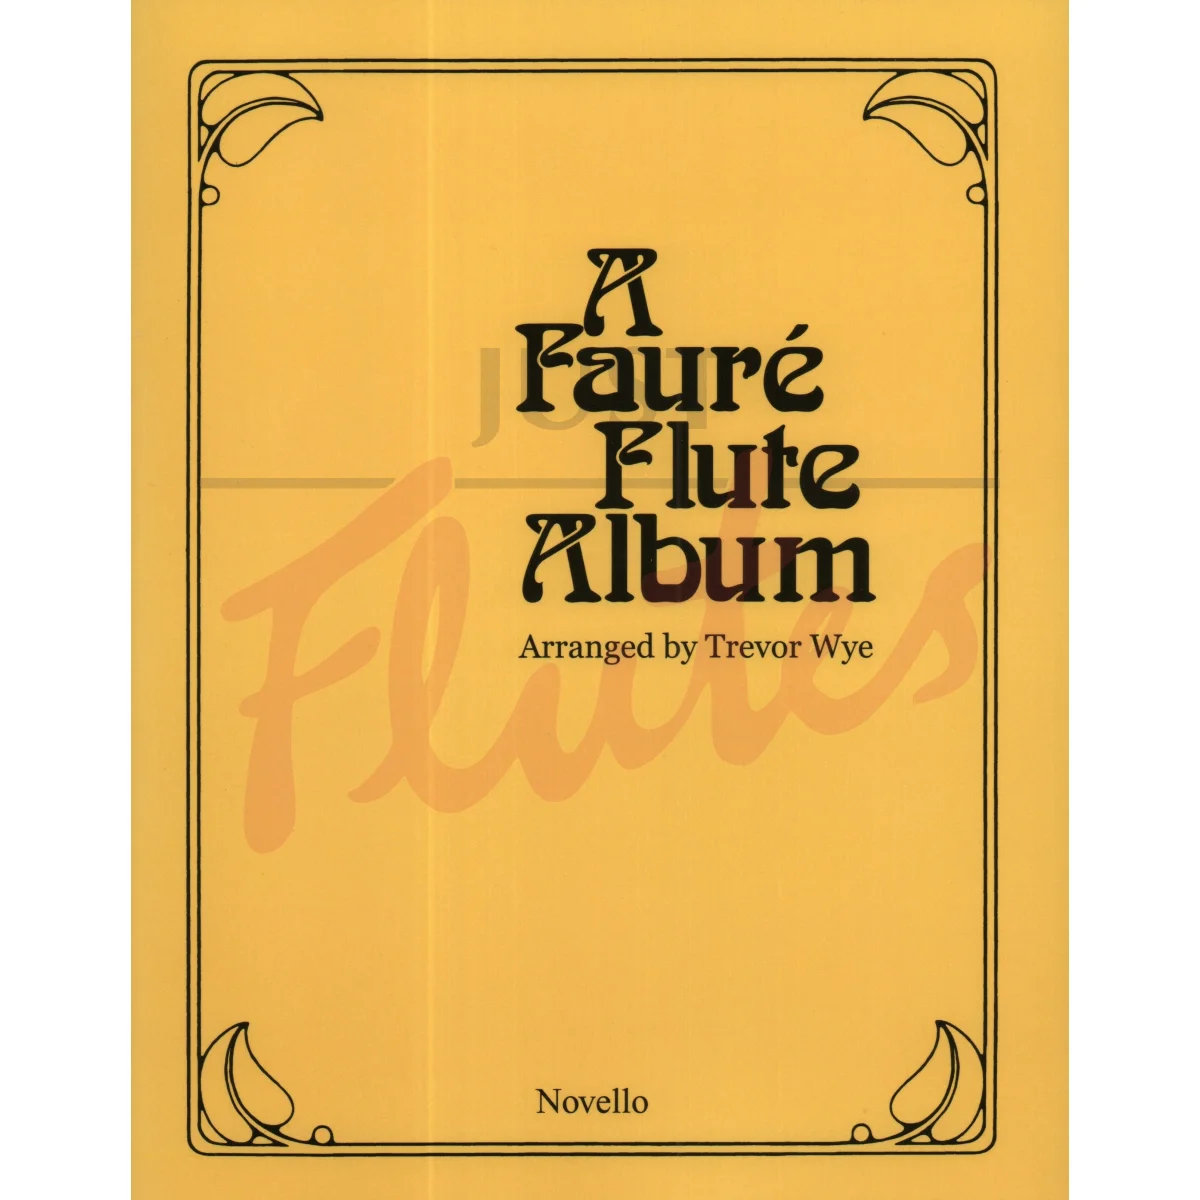 A Fauré Flute Album